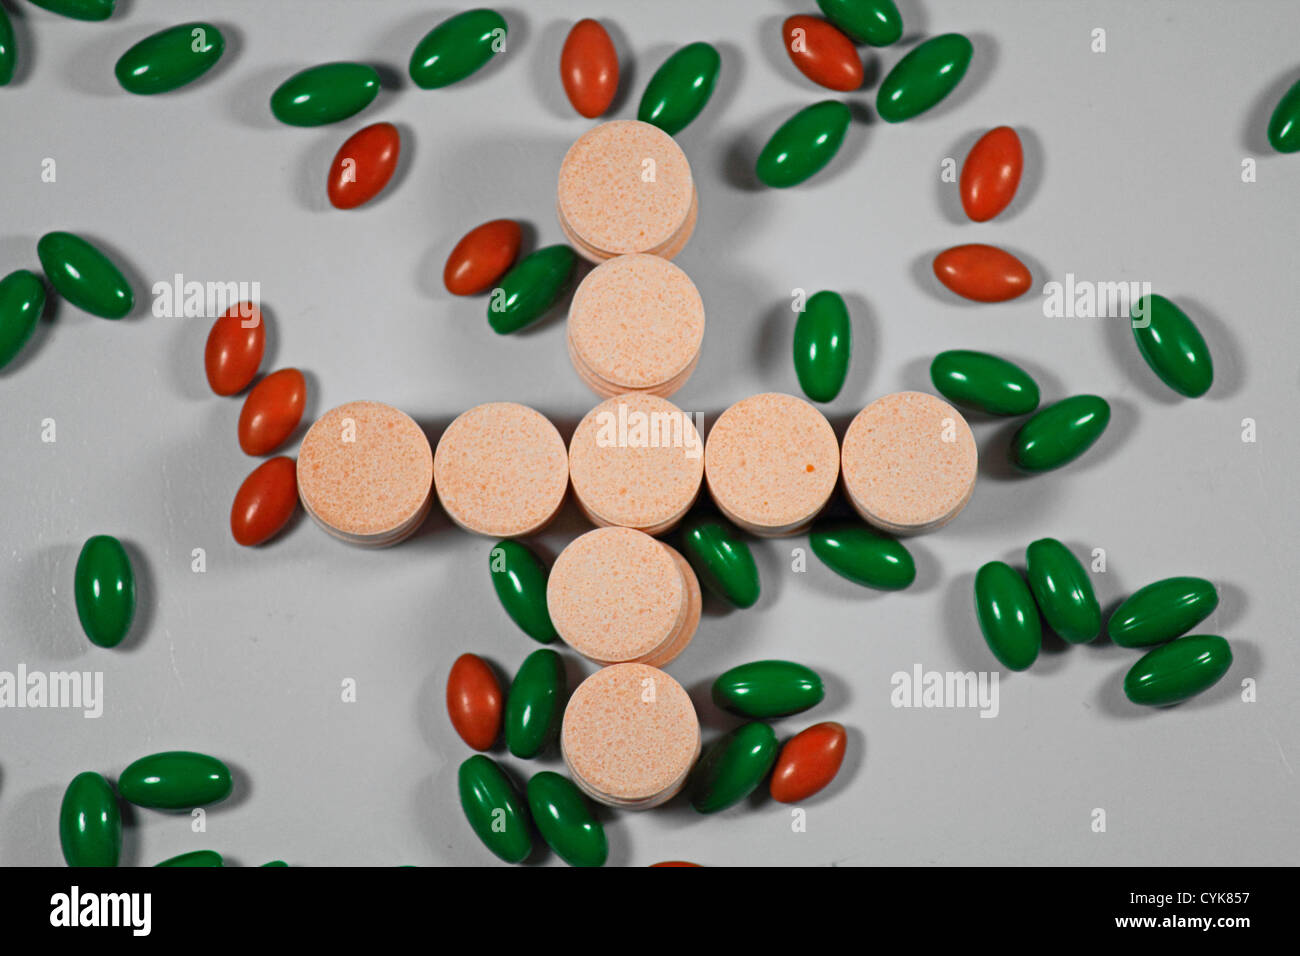 Pills dispuestos en forma de cruz, close-up Foto de stock